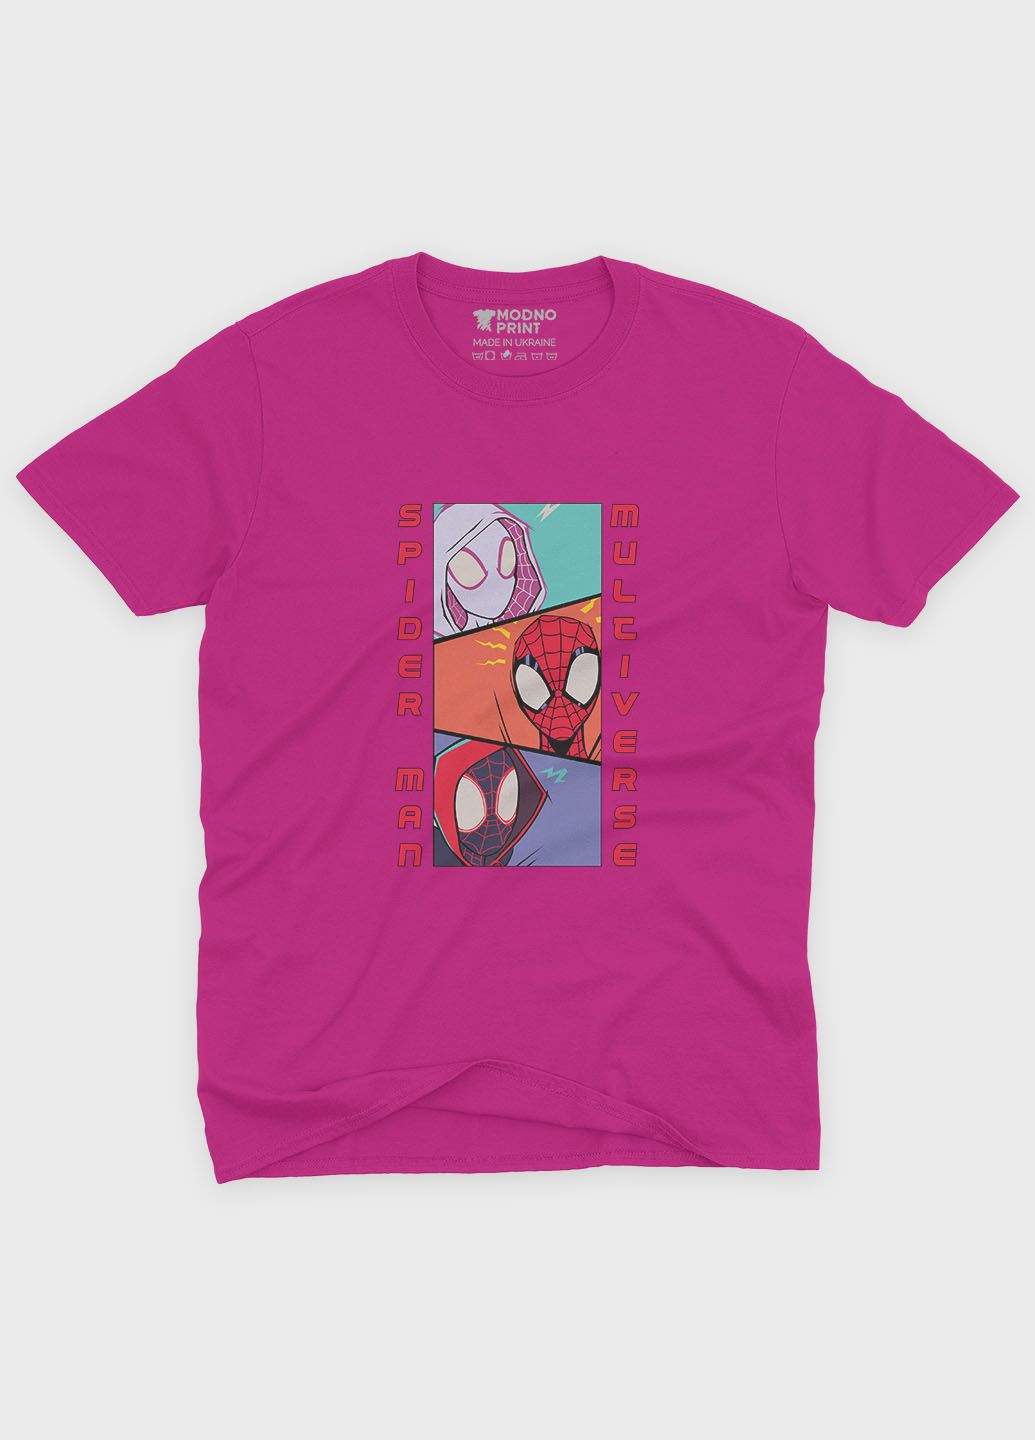 Рожева демісезонна футболка для хлопчика з принтом супергероя - людина-павук (ts001-1-fuxj-006-014-047-b) Modno